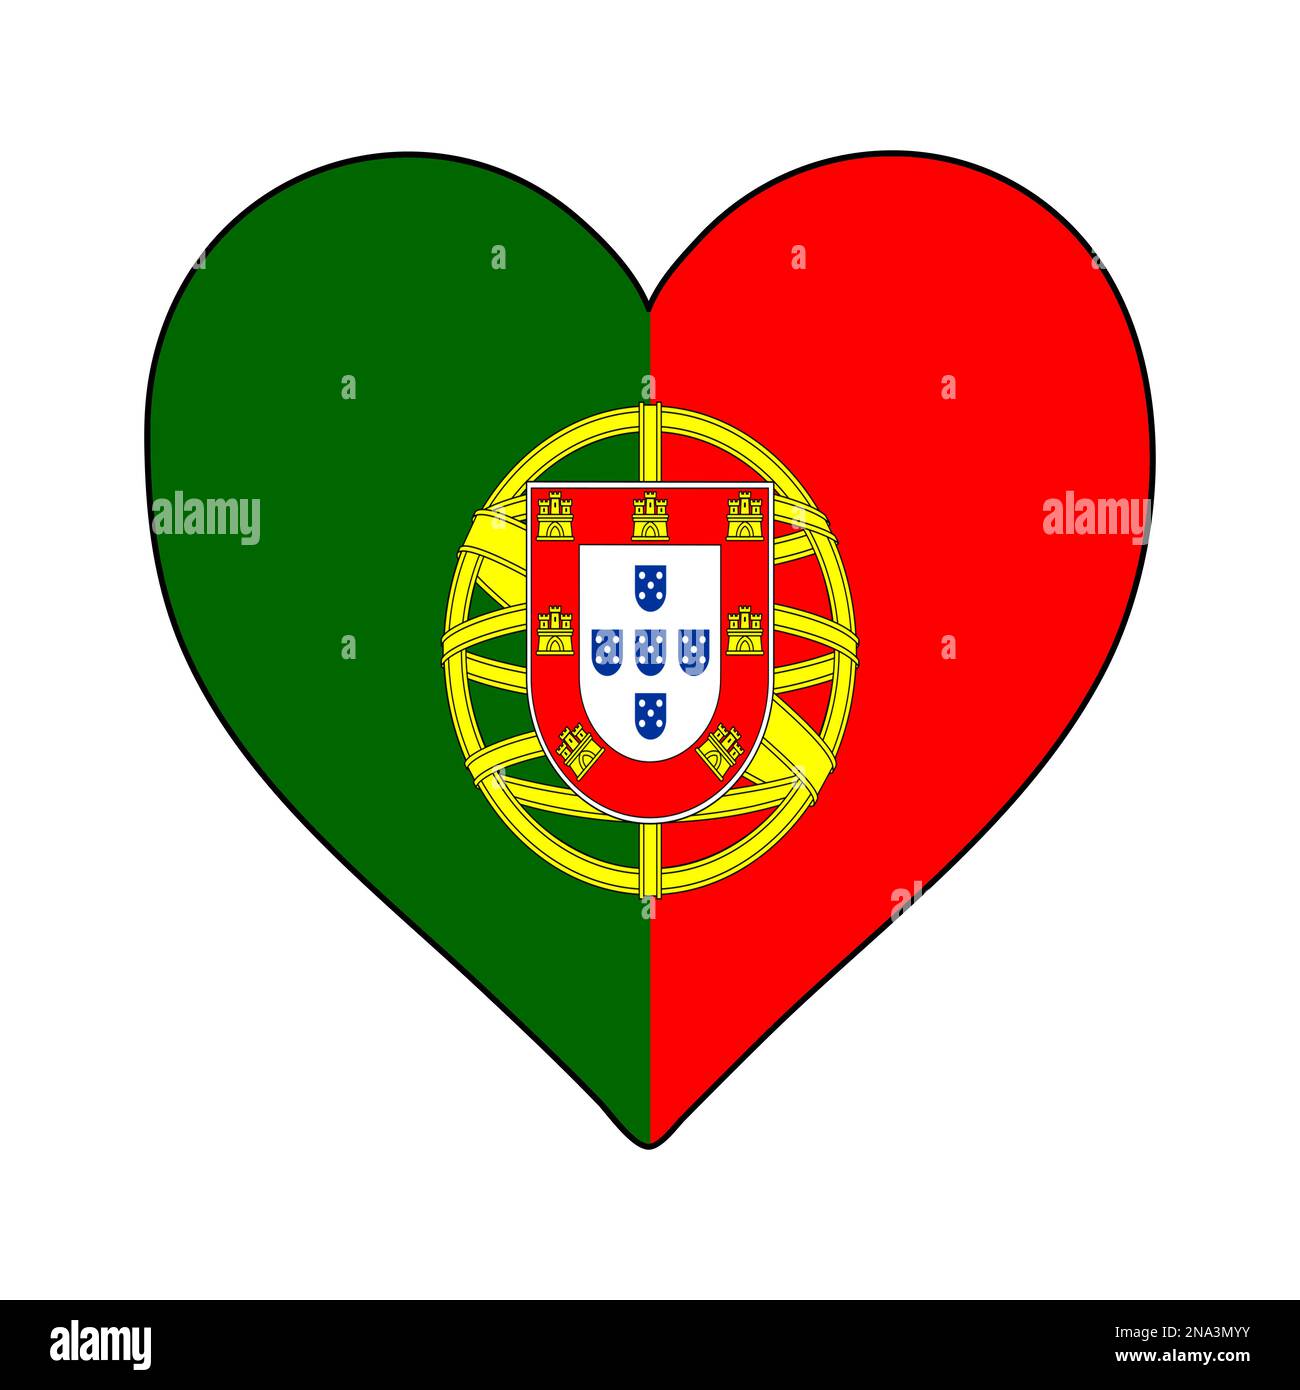 Drapeau Portugal en forme de coeur. J'aime le Portugal. Visite Portugal. Europe du Sud. Europe. Union européenne. Conception graphique d'illustration vectorielle. Illustration de Vecteur